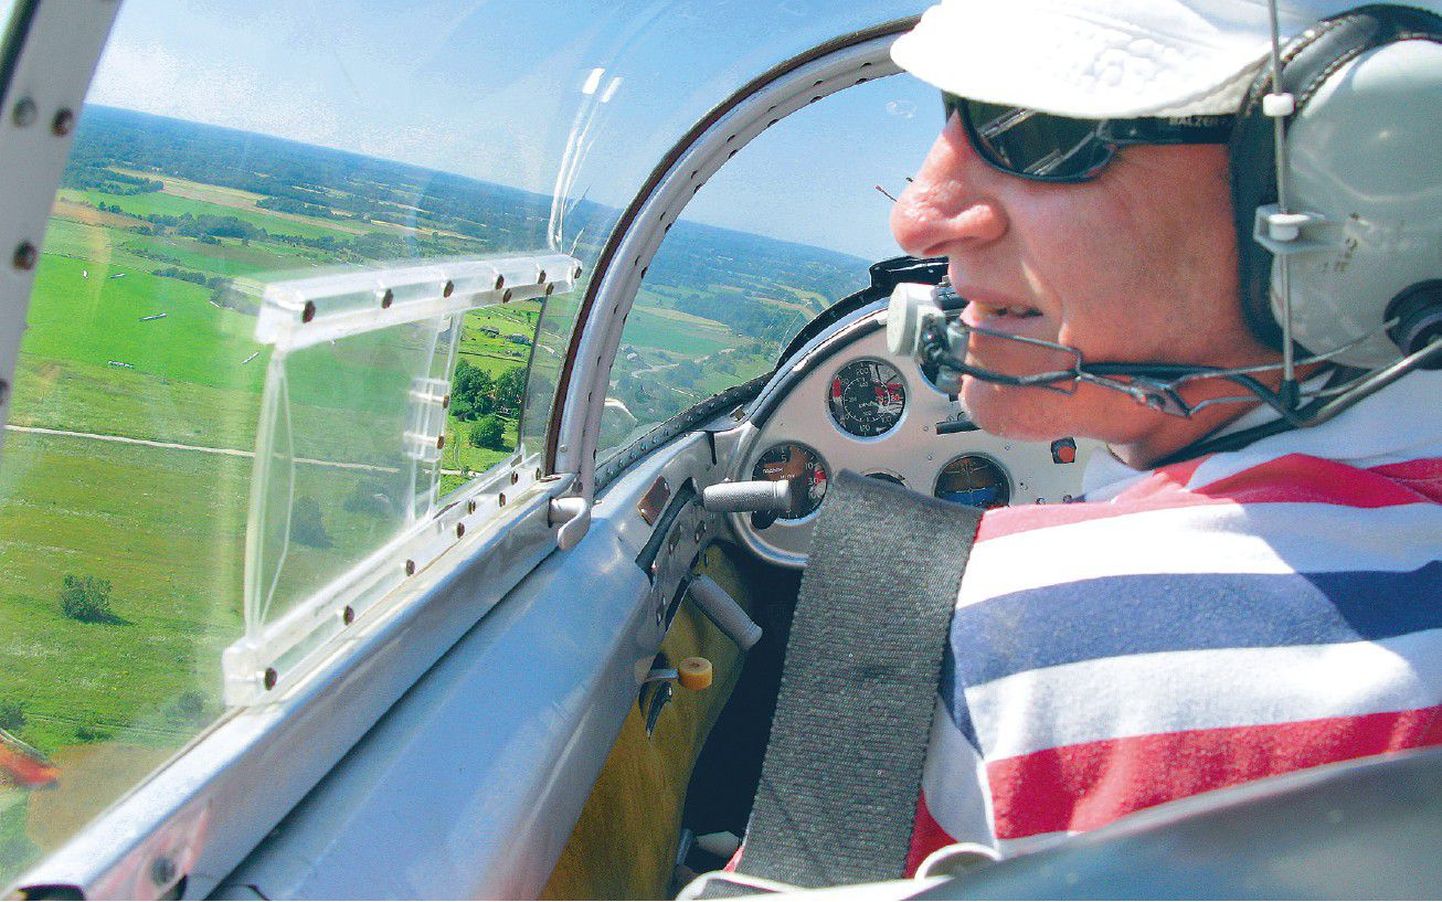 Nii me lendasime kahekohalises mootoriga purilennukis – piloot Andres Peet ees ja Postimehe ajakirjanik tema taga.